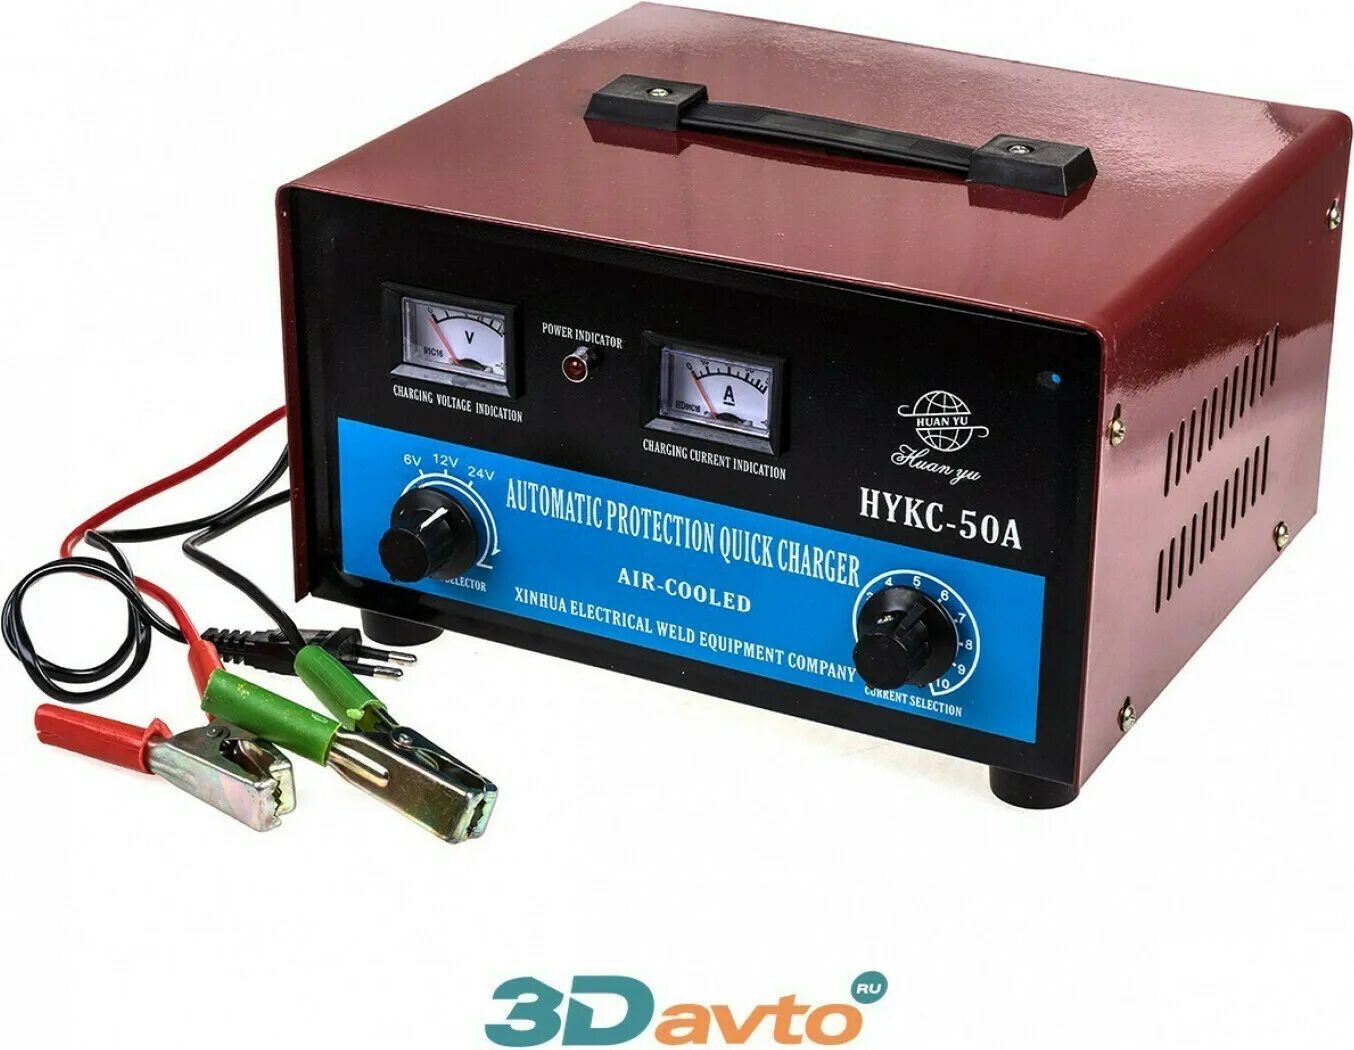 Зарядное устройство аккумулятора АВТОХИТ hykc-50a. Зарядное устройство для автомобильных аккумуляторов Huan Qiu hykc-50a. Китайское зарядное устройство для автомобильного аккумулятора 12в 24в. Зарядное устройство Style hykc -50a. Зарядные 24в купить